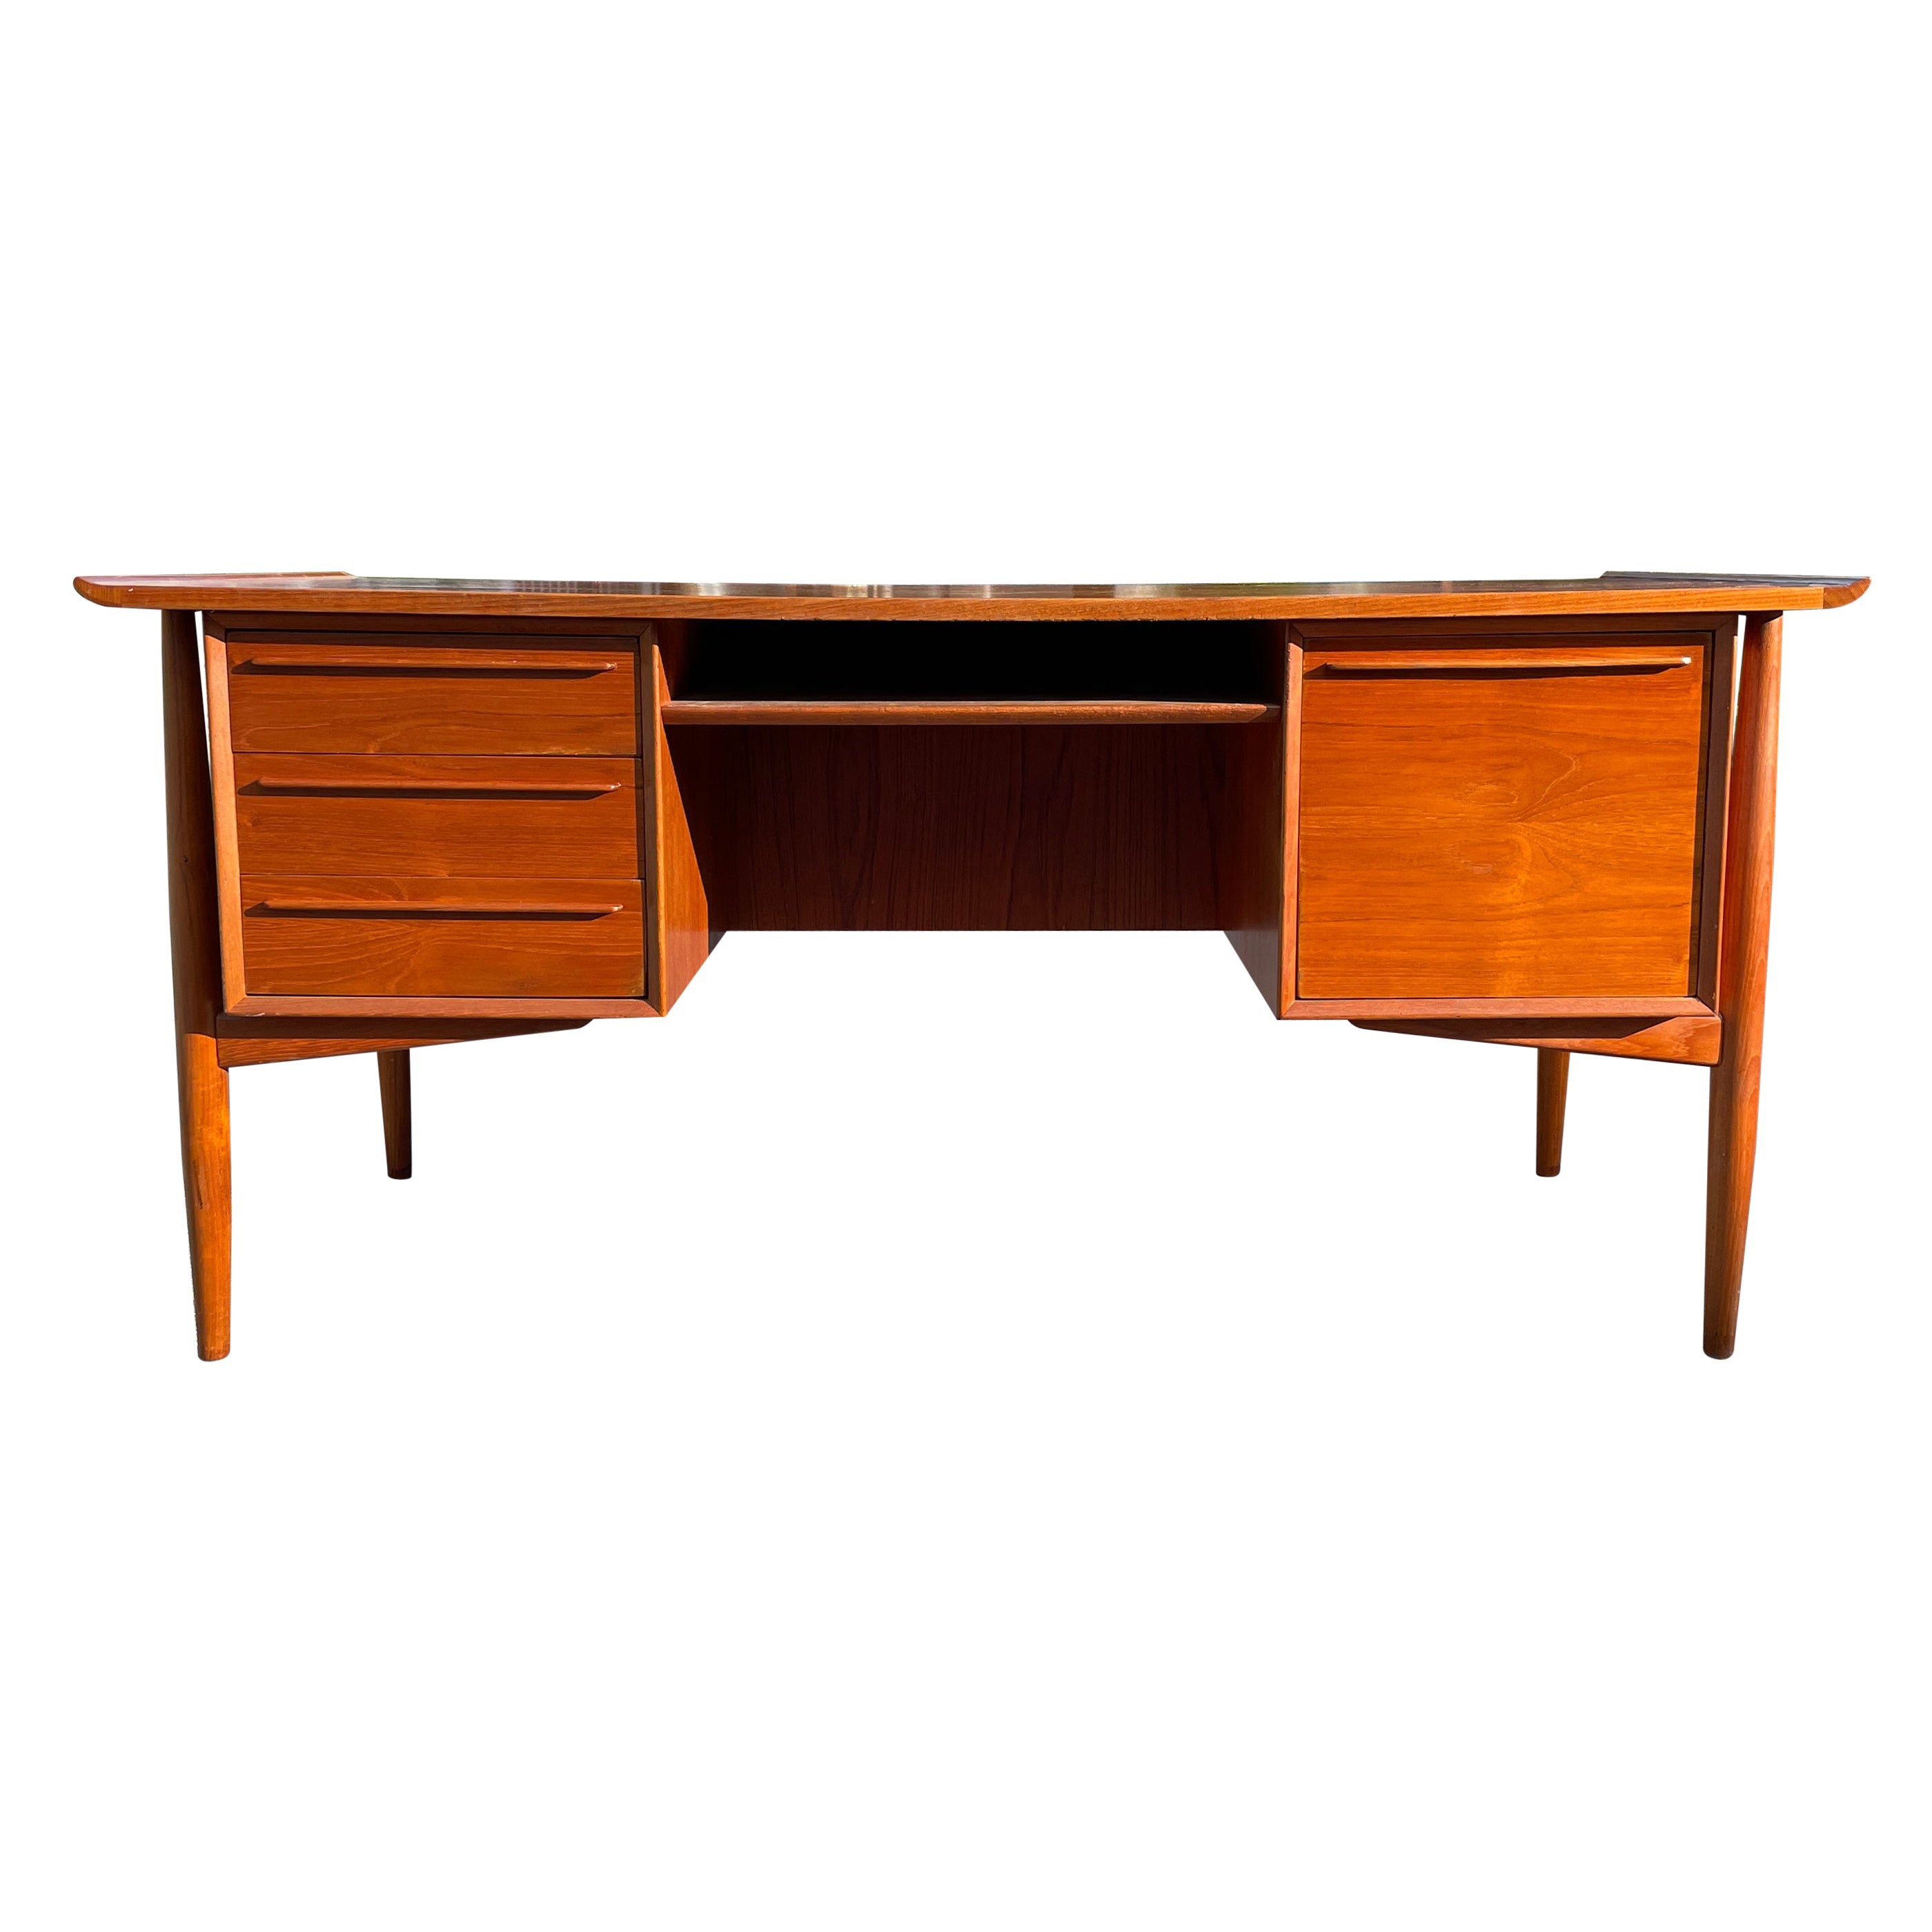 1960s Teak Wood Executive Desk by Arne Vodder for H.P. Hansen For Sale